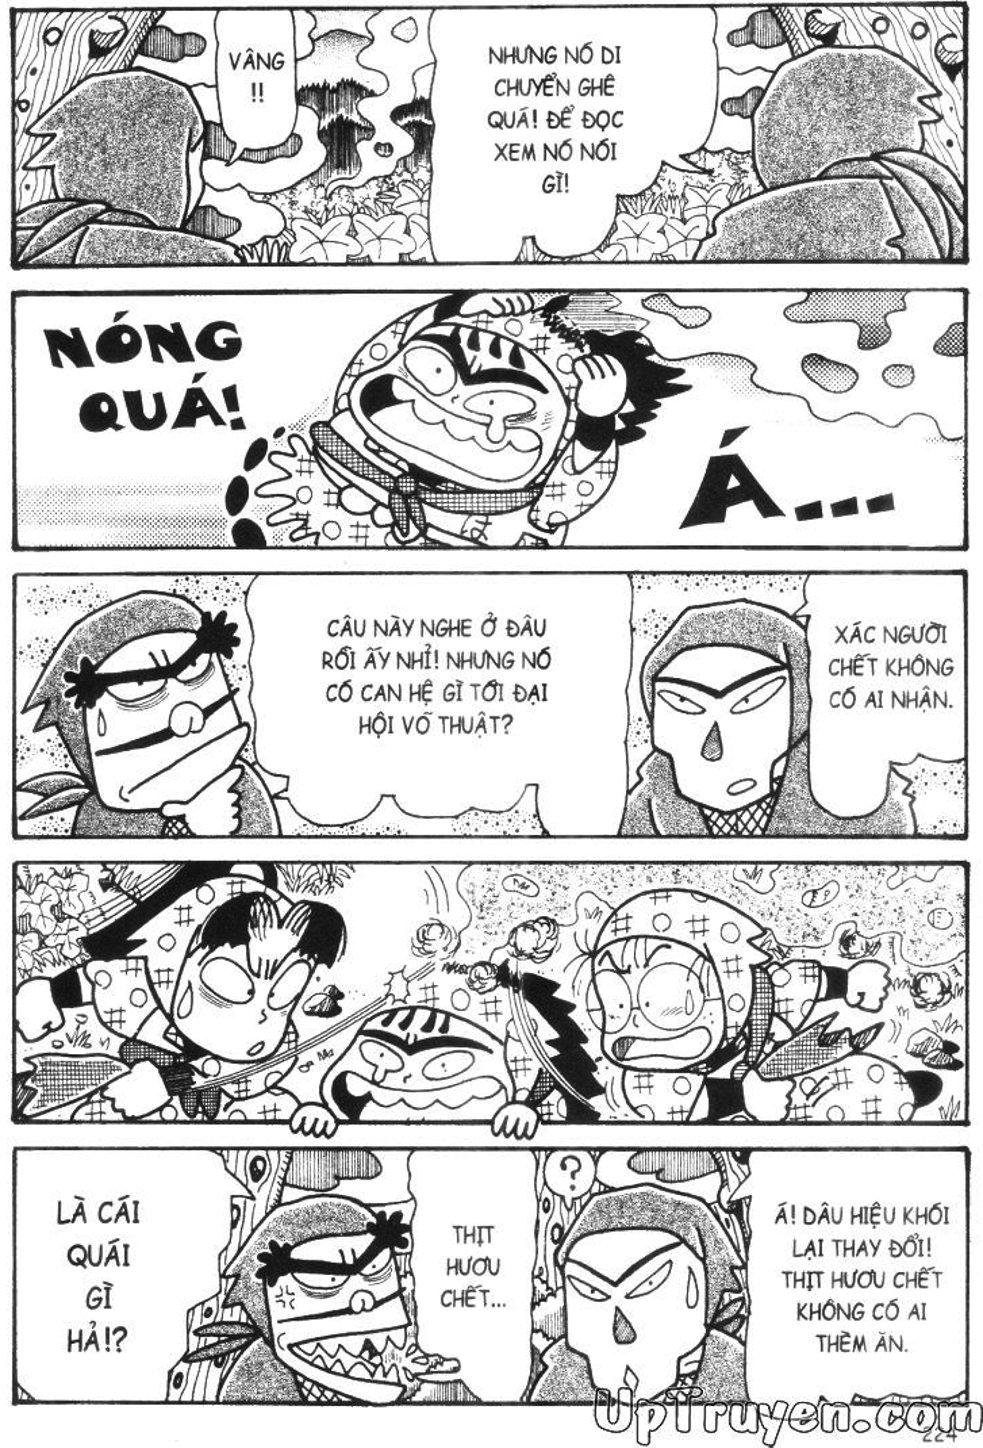 Truyện Tranh Ninja Loạn Thị trang 8144